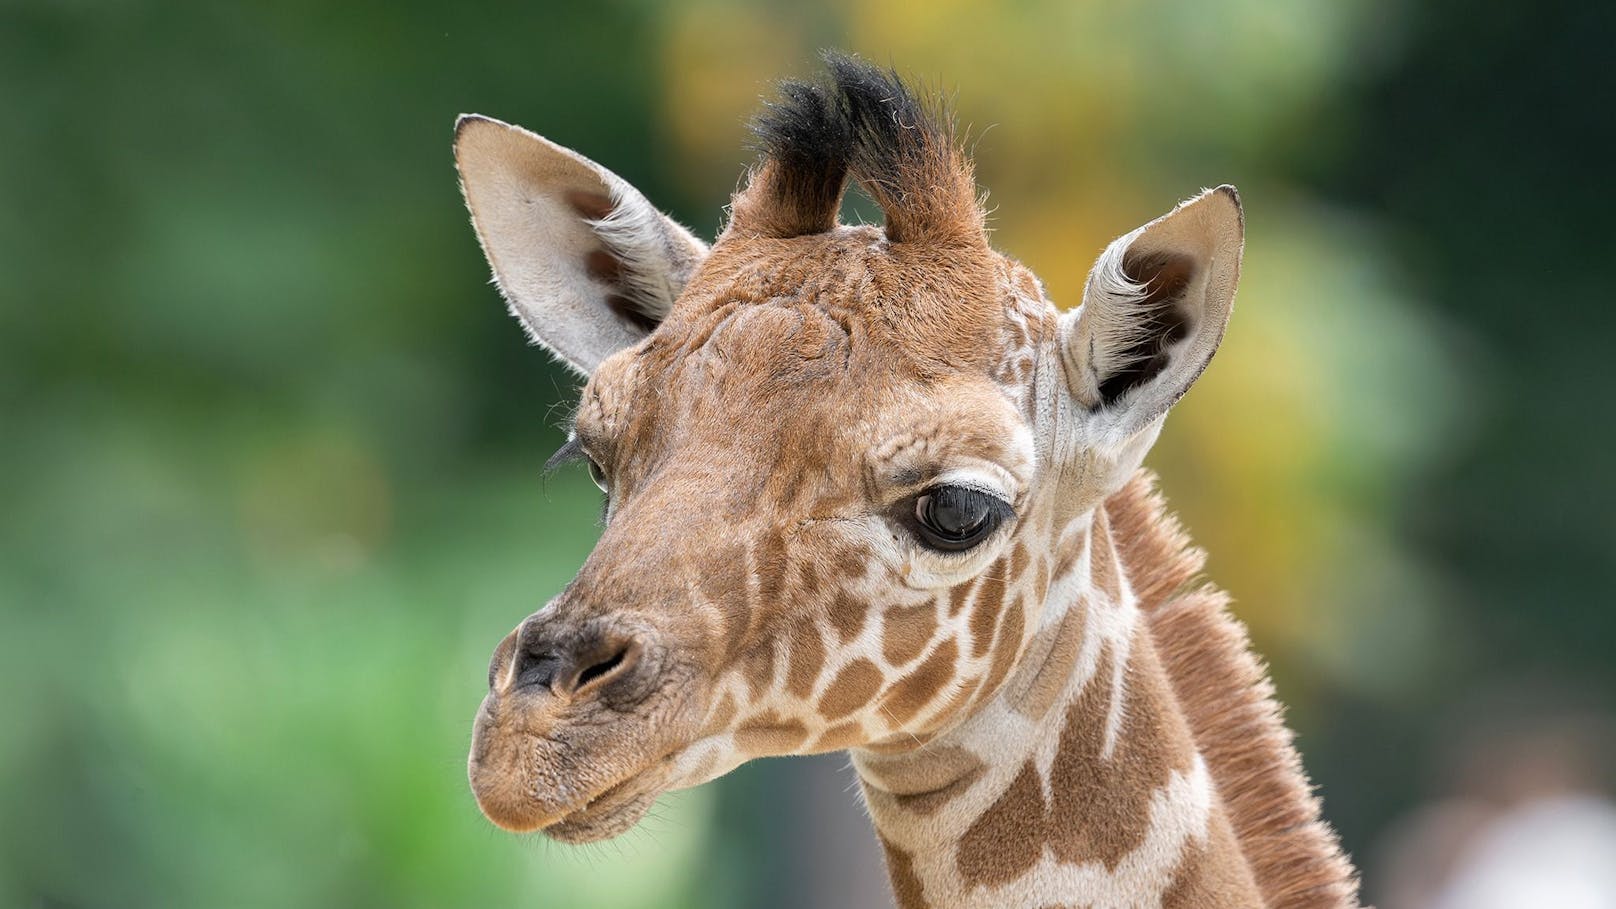 Nach dem traurigen Tod des Schönbrunner Giraffenbabys liegt nun der Endbefund der Pathologie vor.